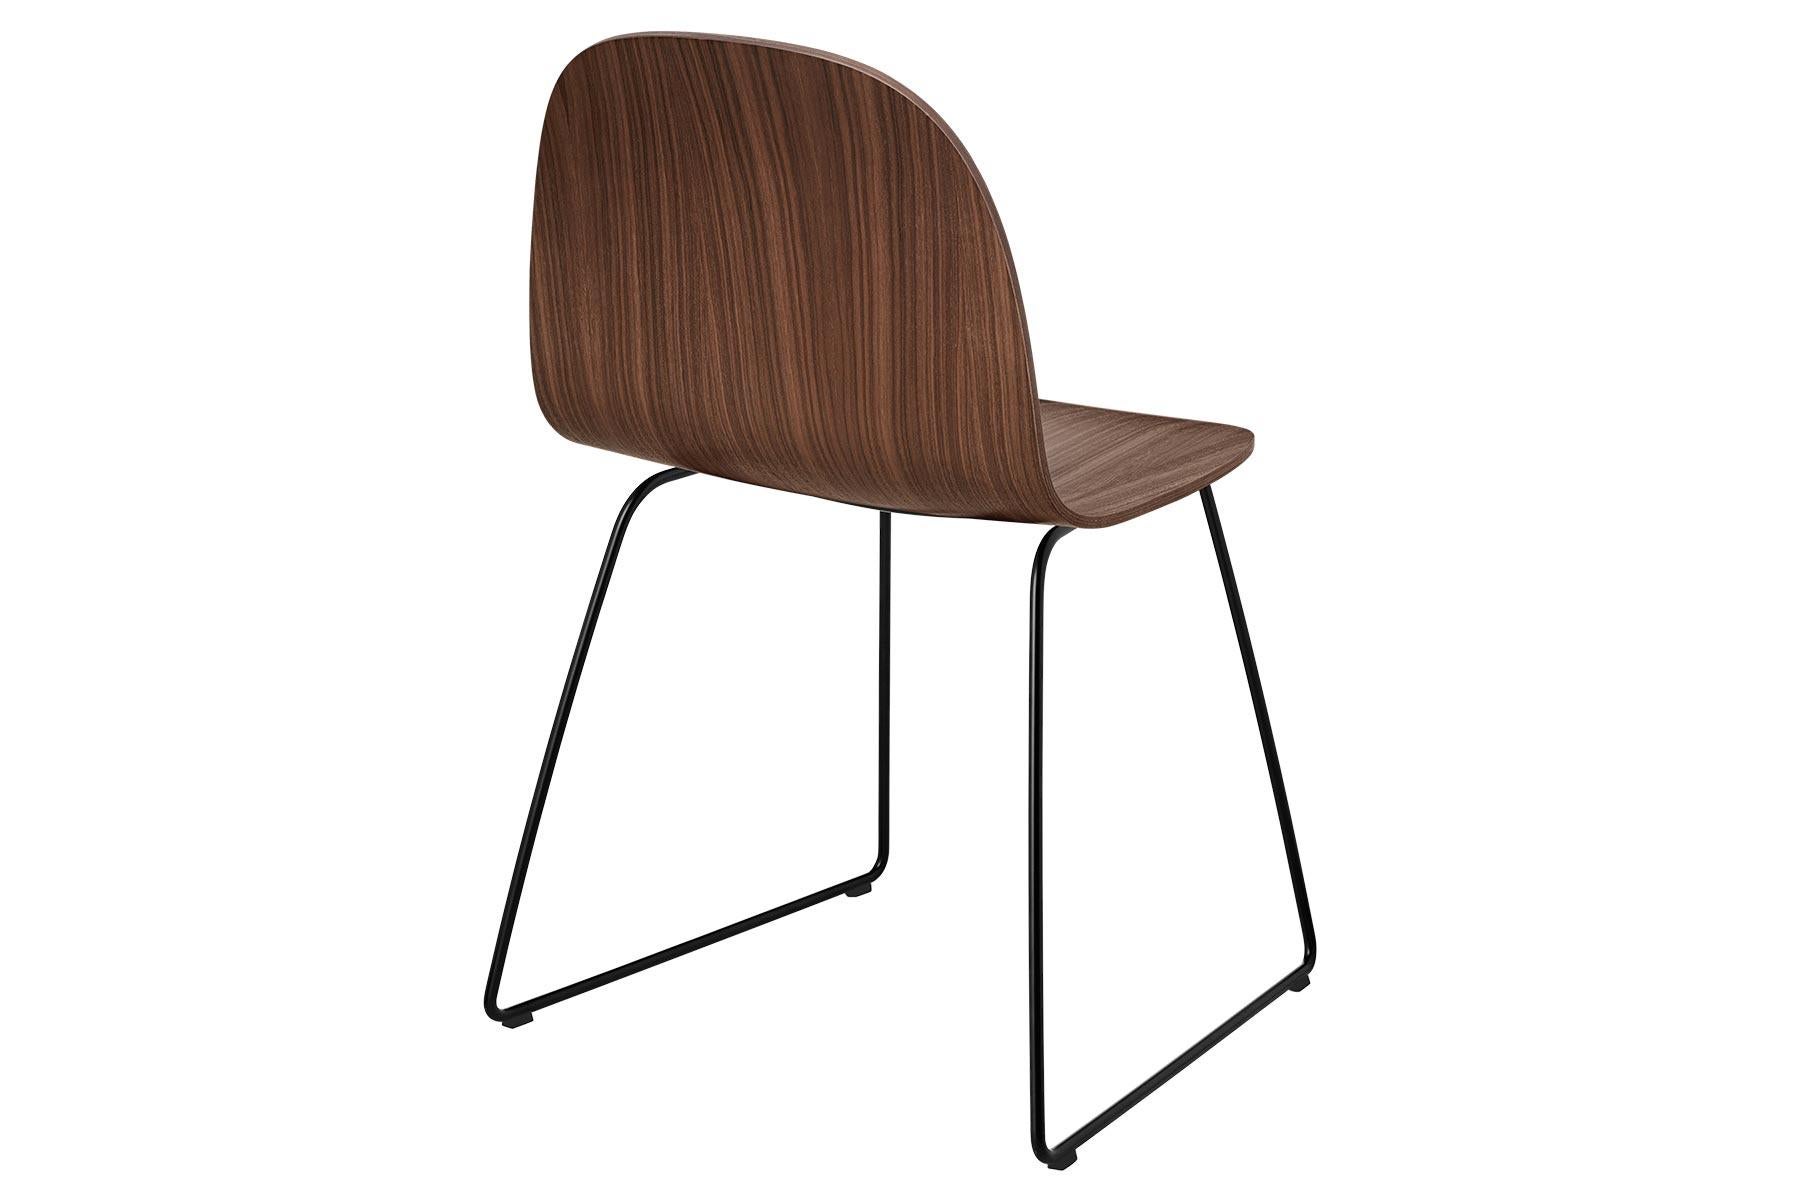 Der Gubi 2D Chair ist eine Serie von leichten Esszimmerstühlen aus laminiertem Furnier mit der Möglichkeit, die Vorderseite mit einer Vielzahl von Stoffen und Ledern zu beziehen, die sich sowohl für private als auch für öffentliche Räume eignen. Er